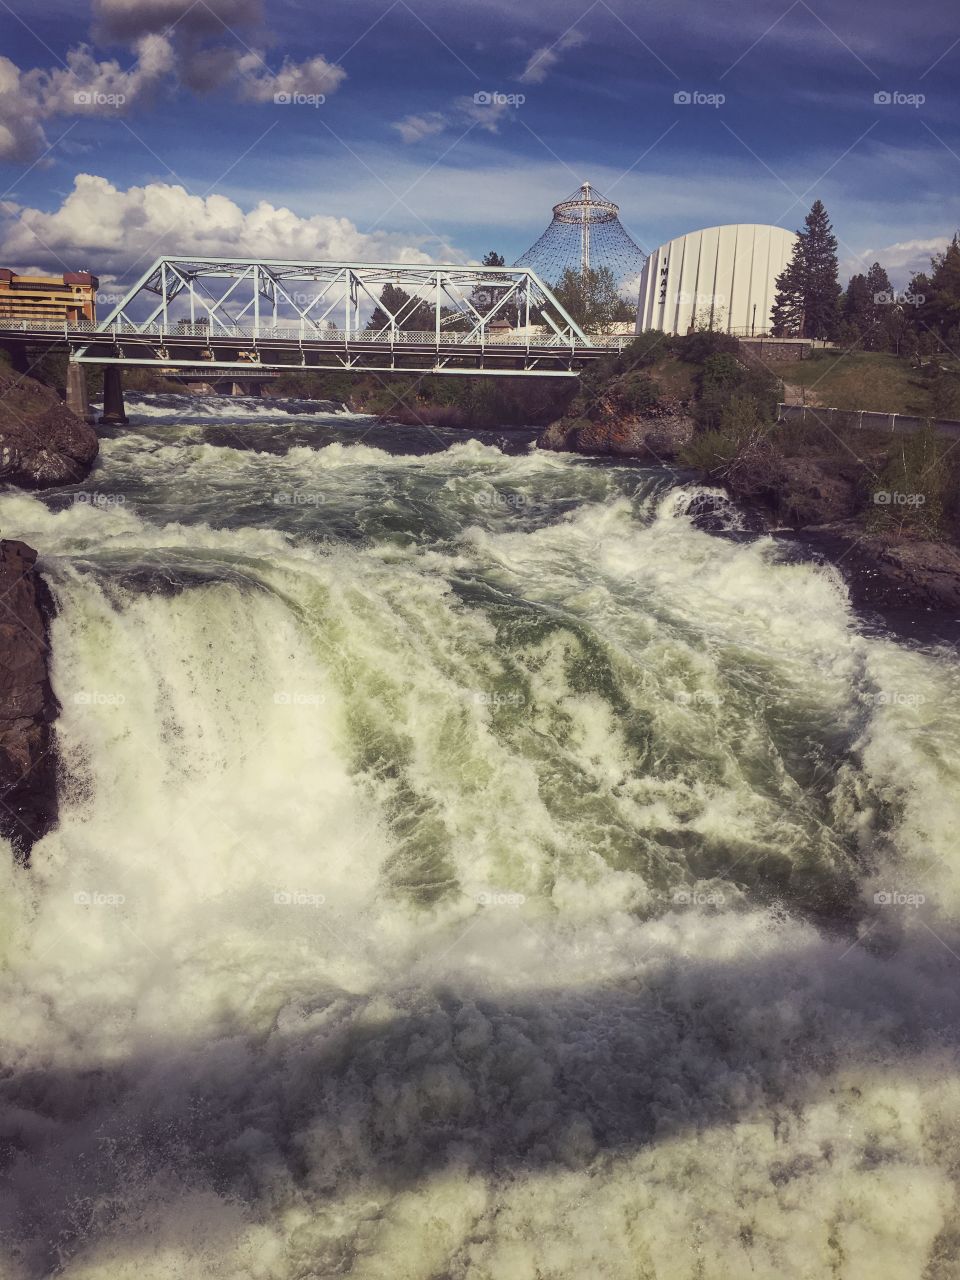 Spokane falls